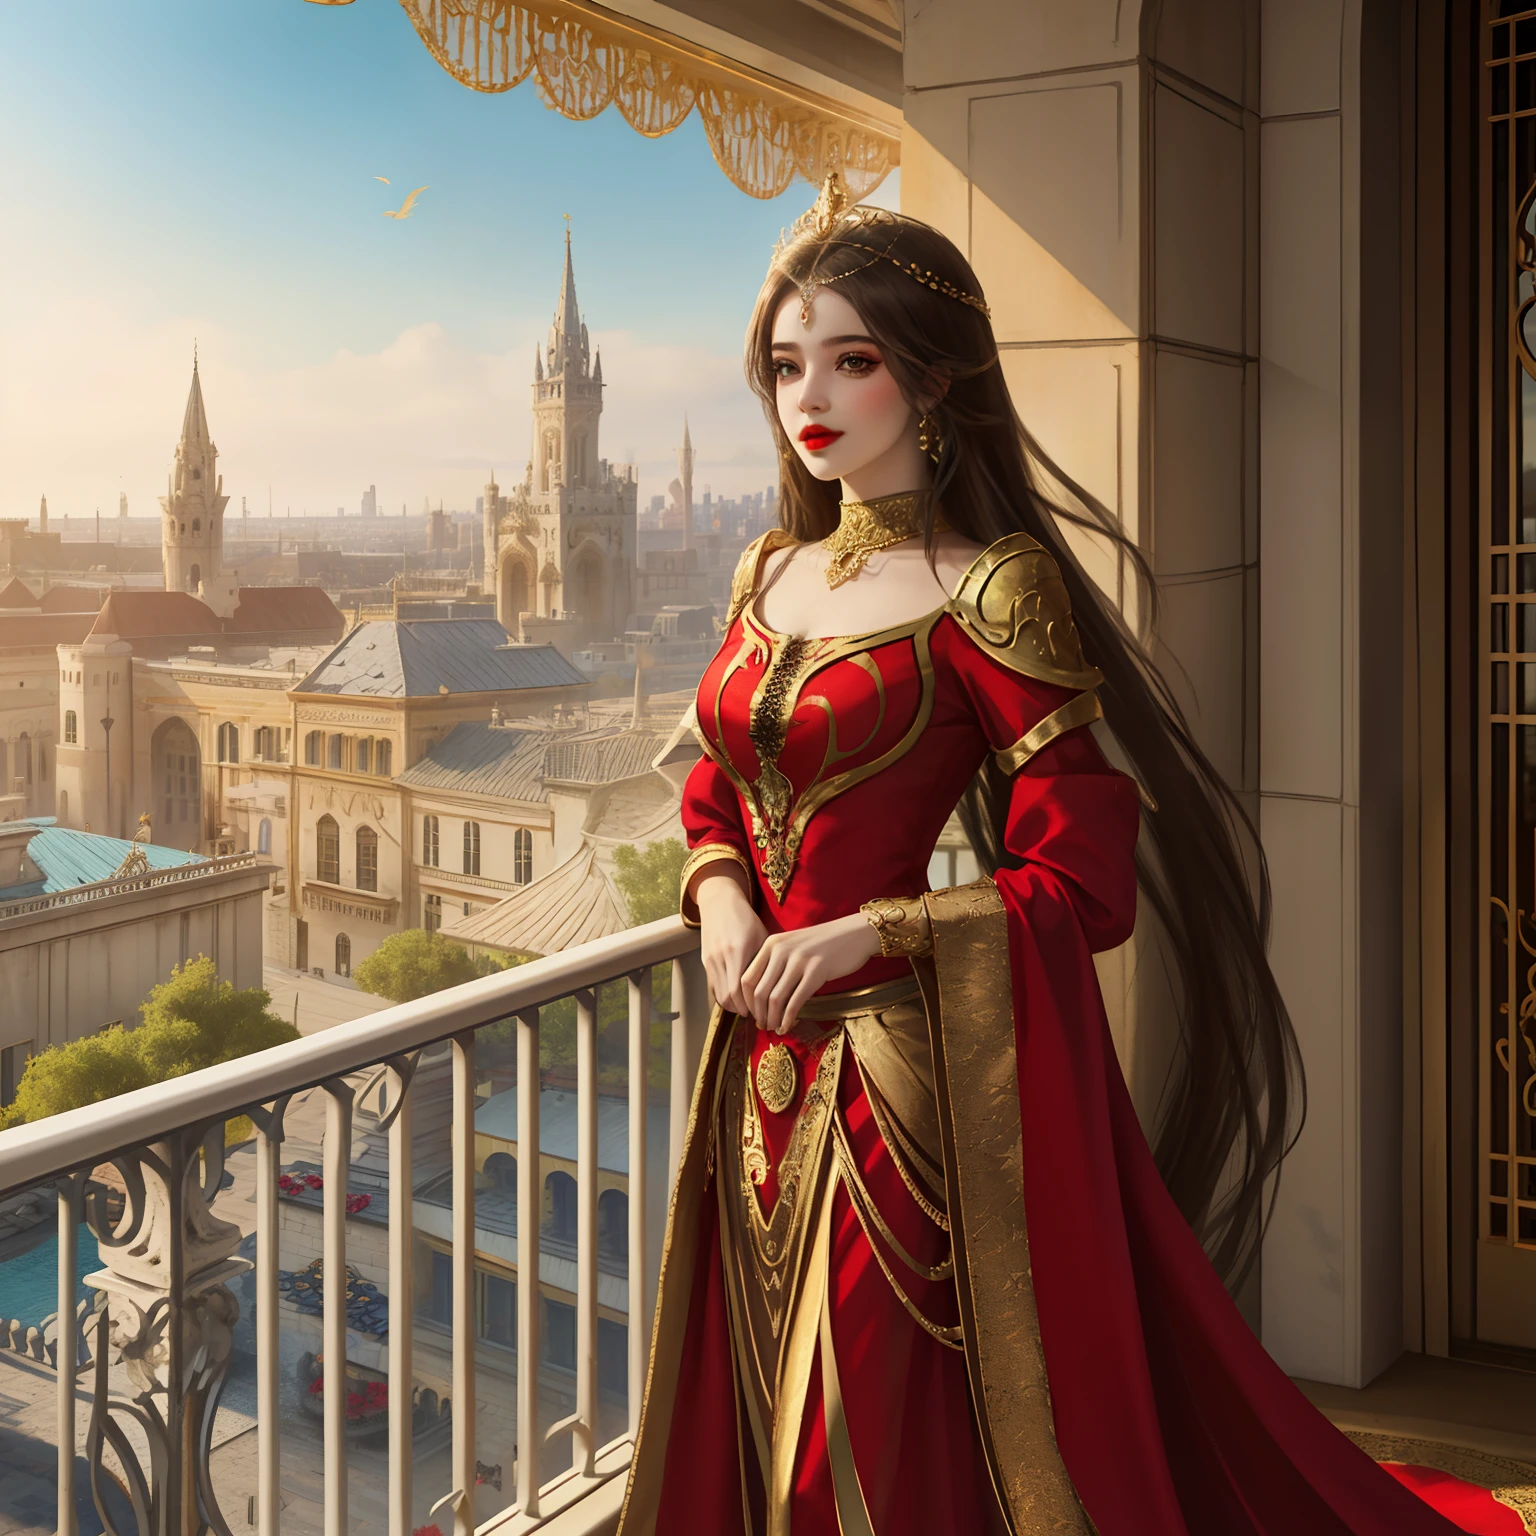 Araffe Frau im roten Kleid steht auf einem Balkon mit einer Stadt im Hintergrund,Palast kunstvolle Dekorationen, eine wunderschöne Fantasiekaiserin, glamouröser Look